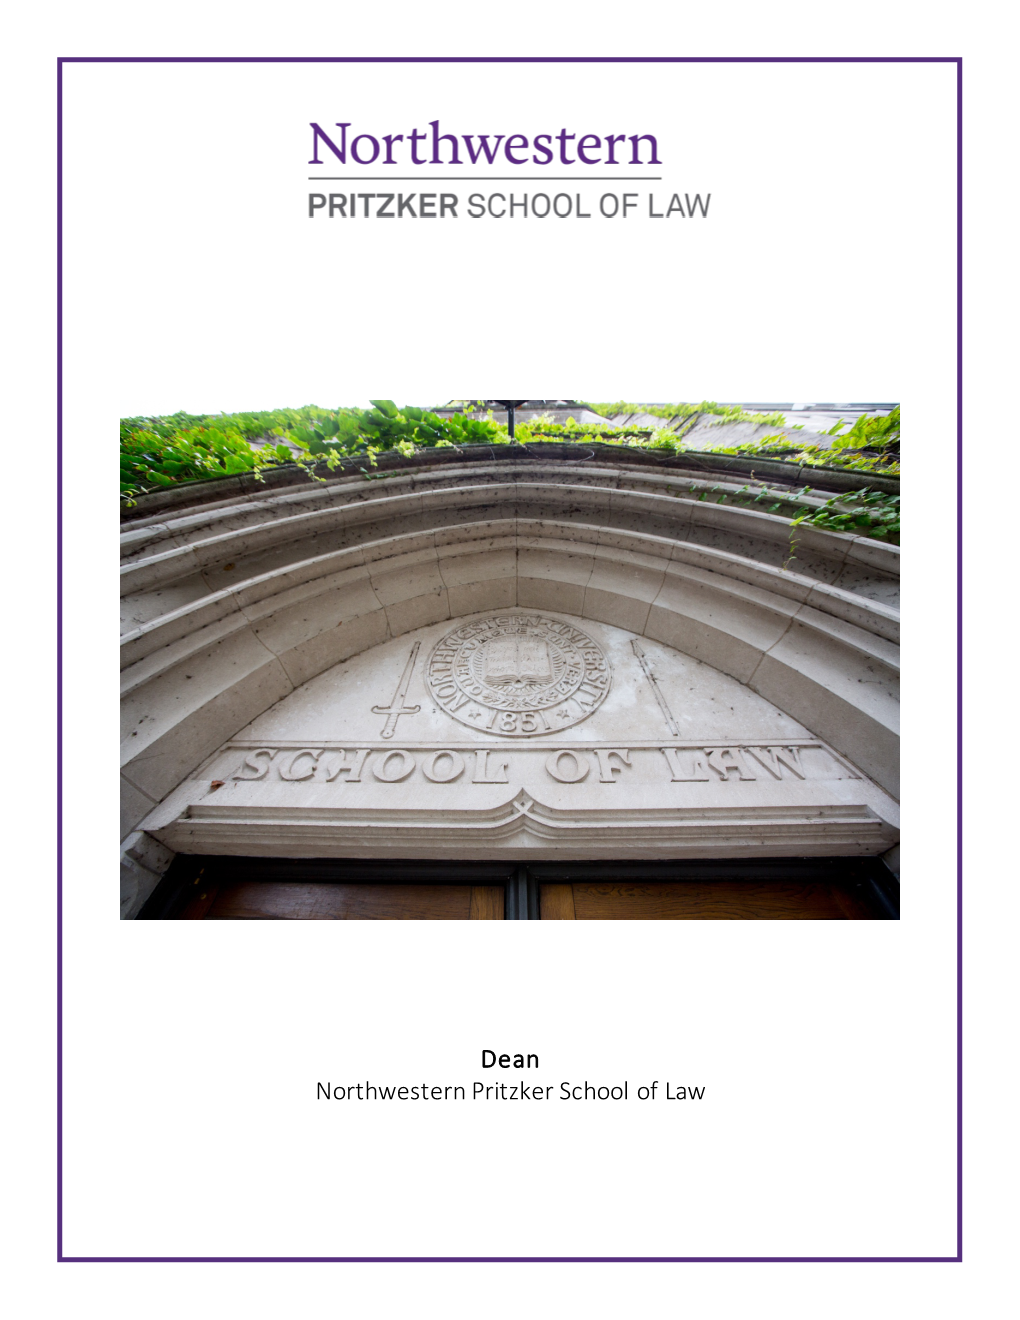 Dean Northwestern Pritzker School of Law